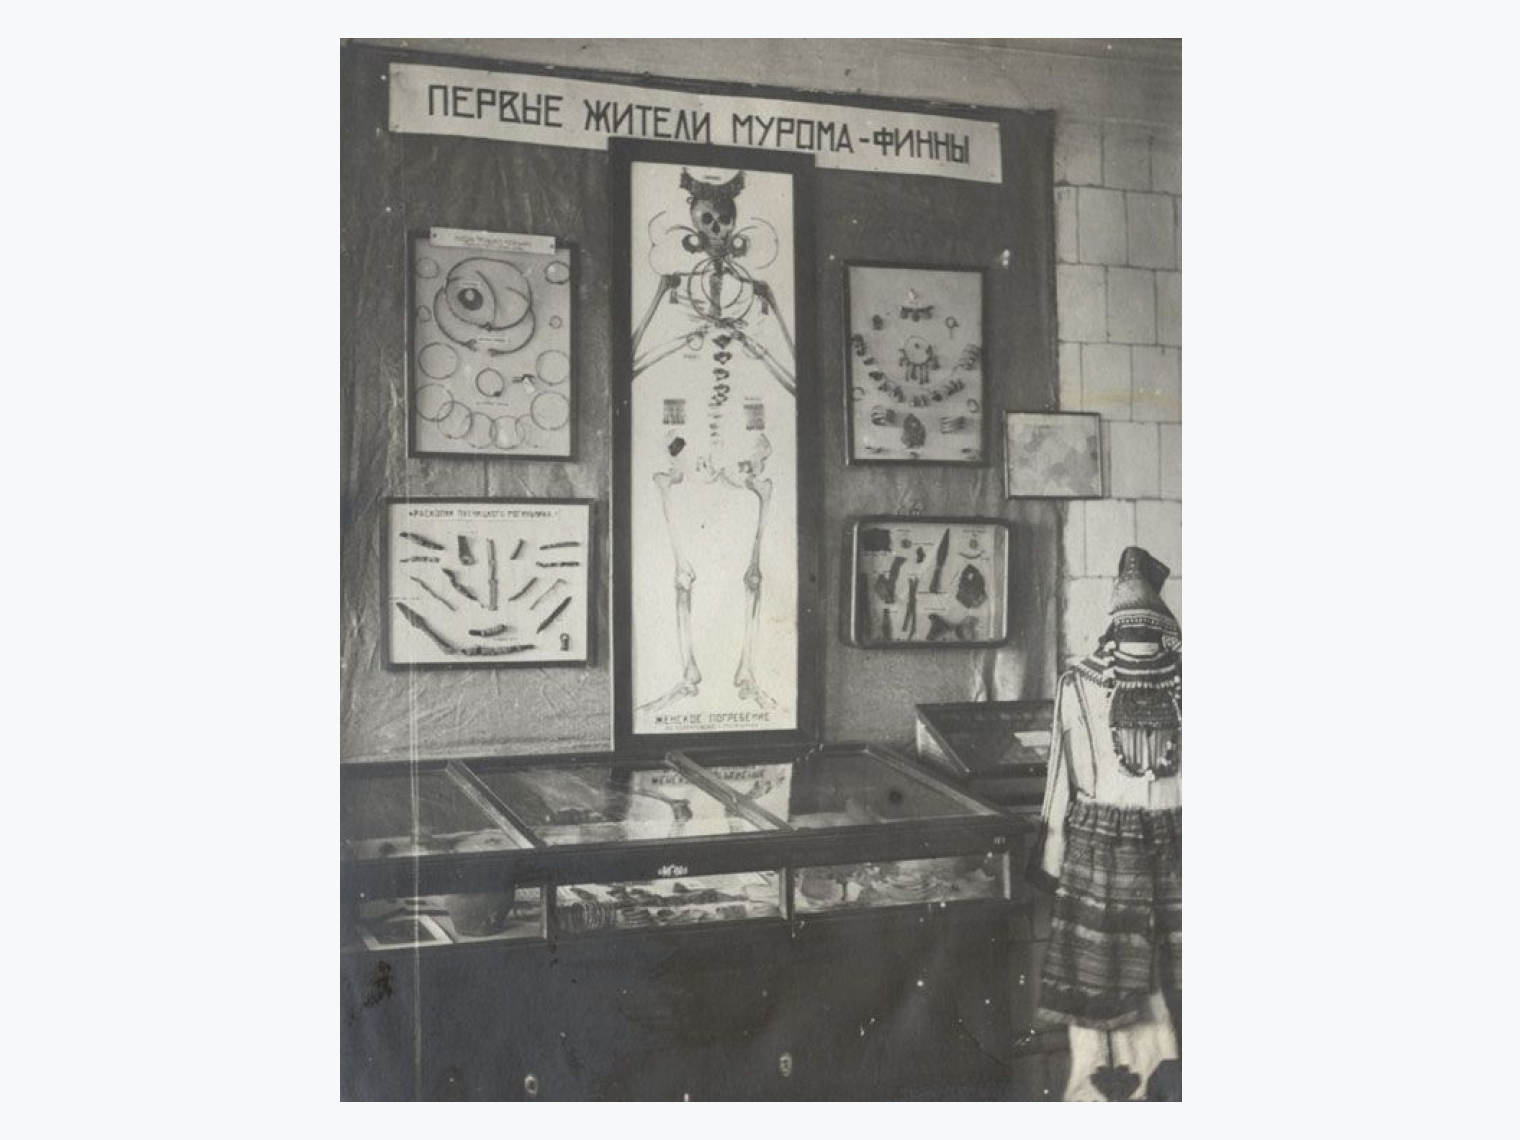 Фрагмент экспозиции в Муромском краеведческом музее, 1930-е годы © Муромский историко-художественный музей